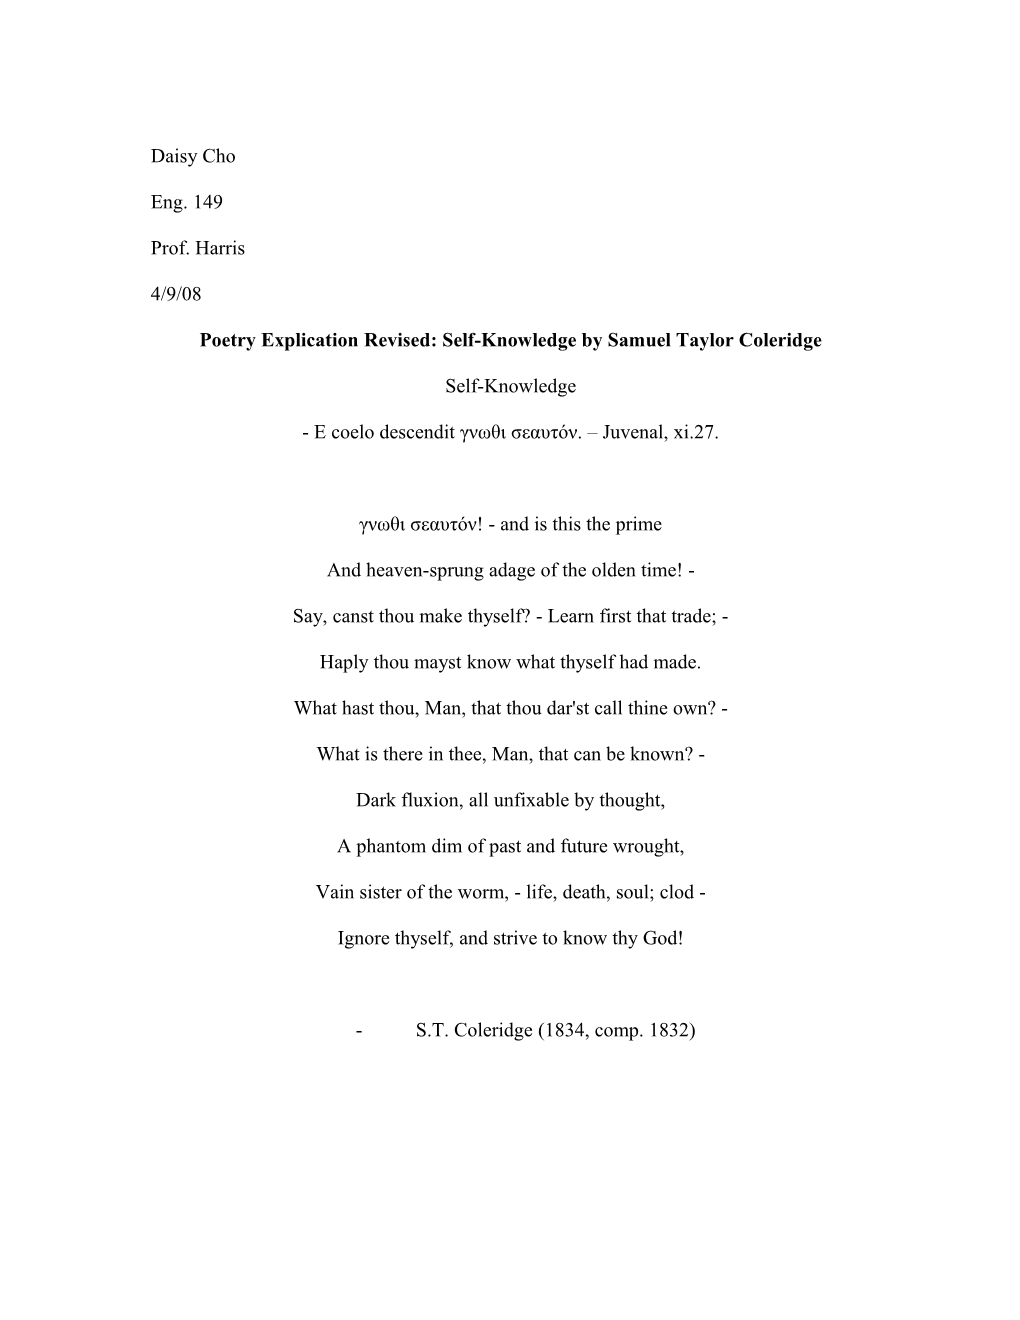 Poetry Explication Revised: Self-Knowledge by Samuel Taylor Coleridge